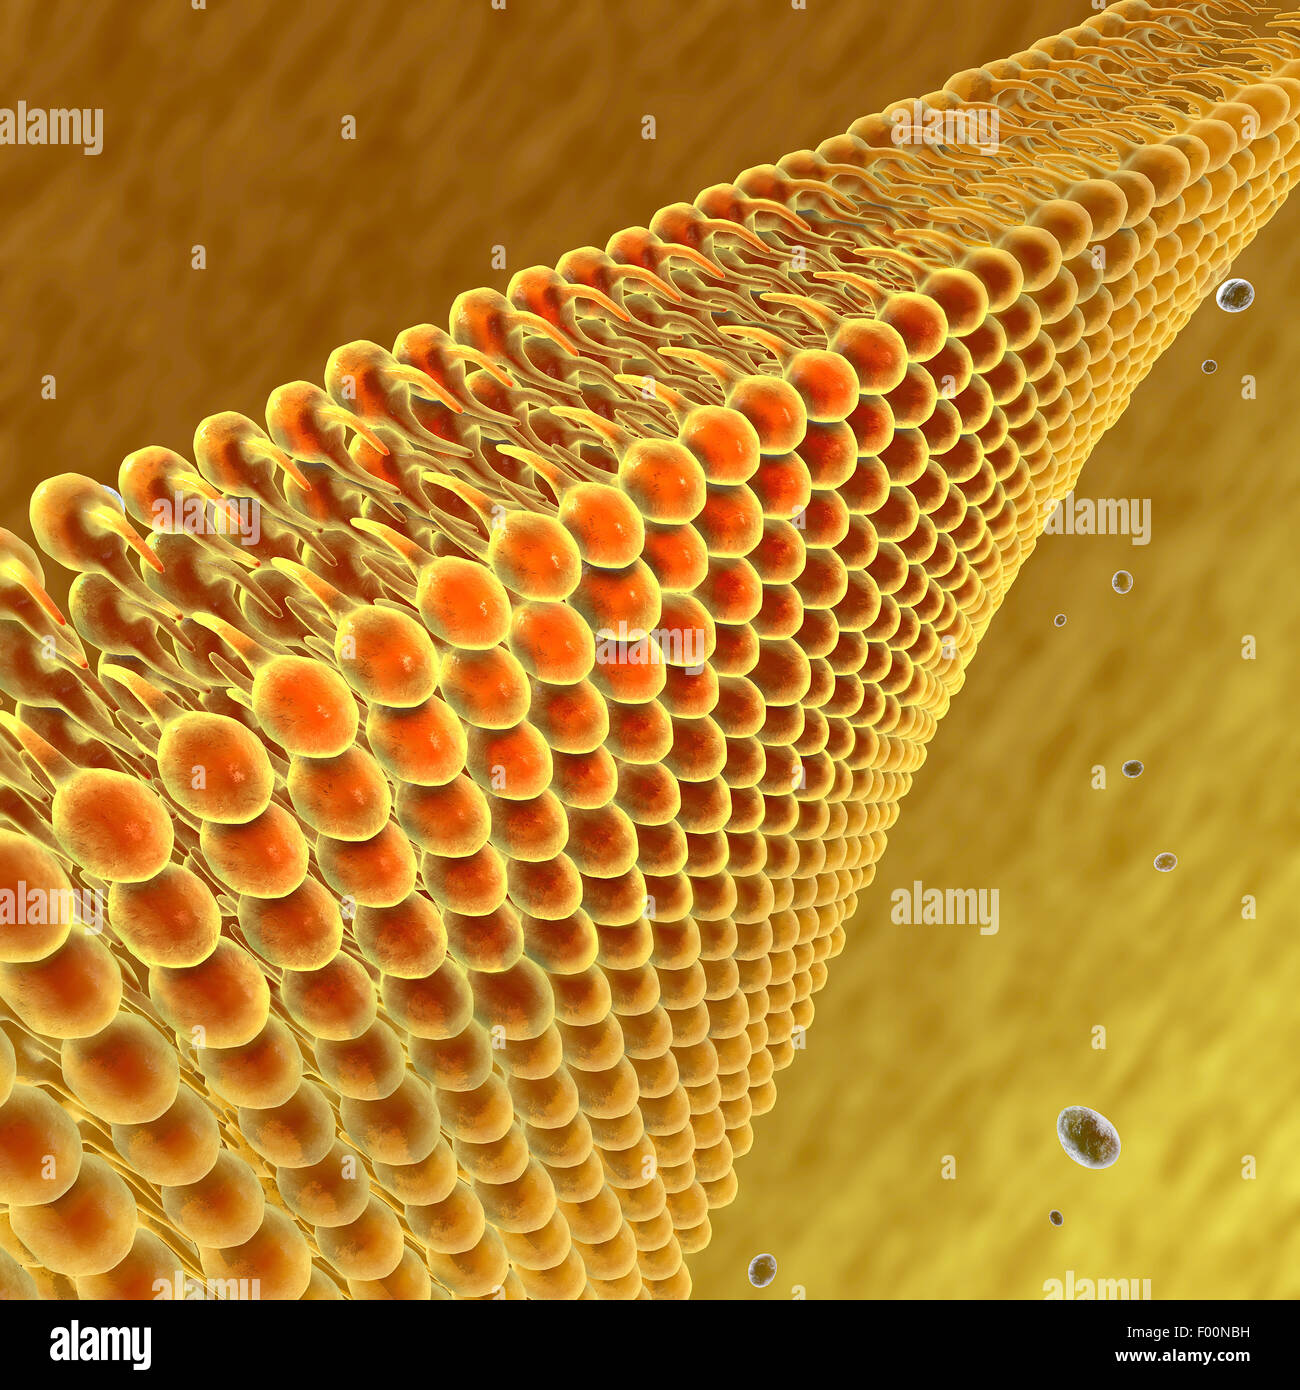 3D Lipide und Fette unter einem Mikroskop betrachtet Stockfoto